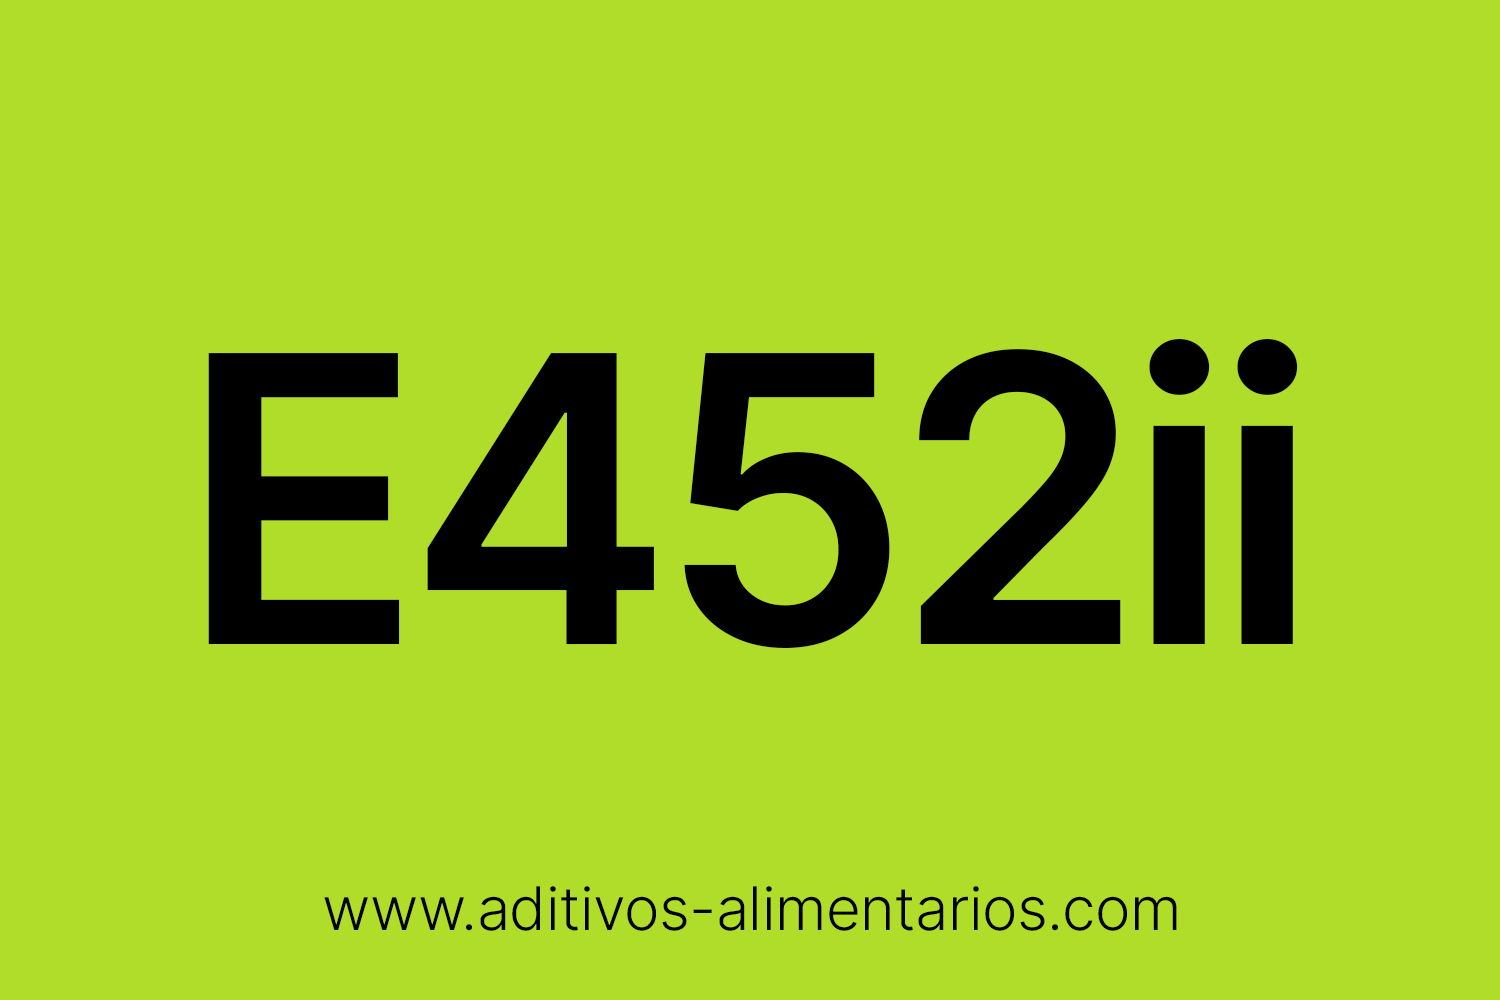 Aditivo Alimentario - E452ii - Polifosfato Potásico